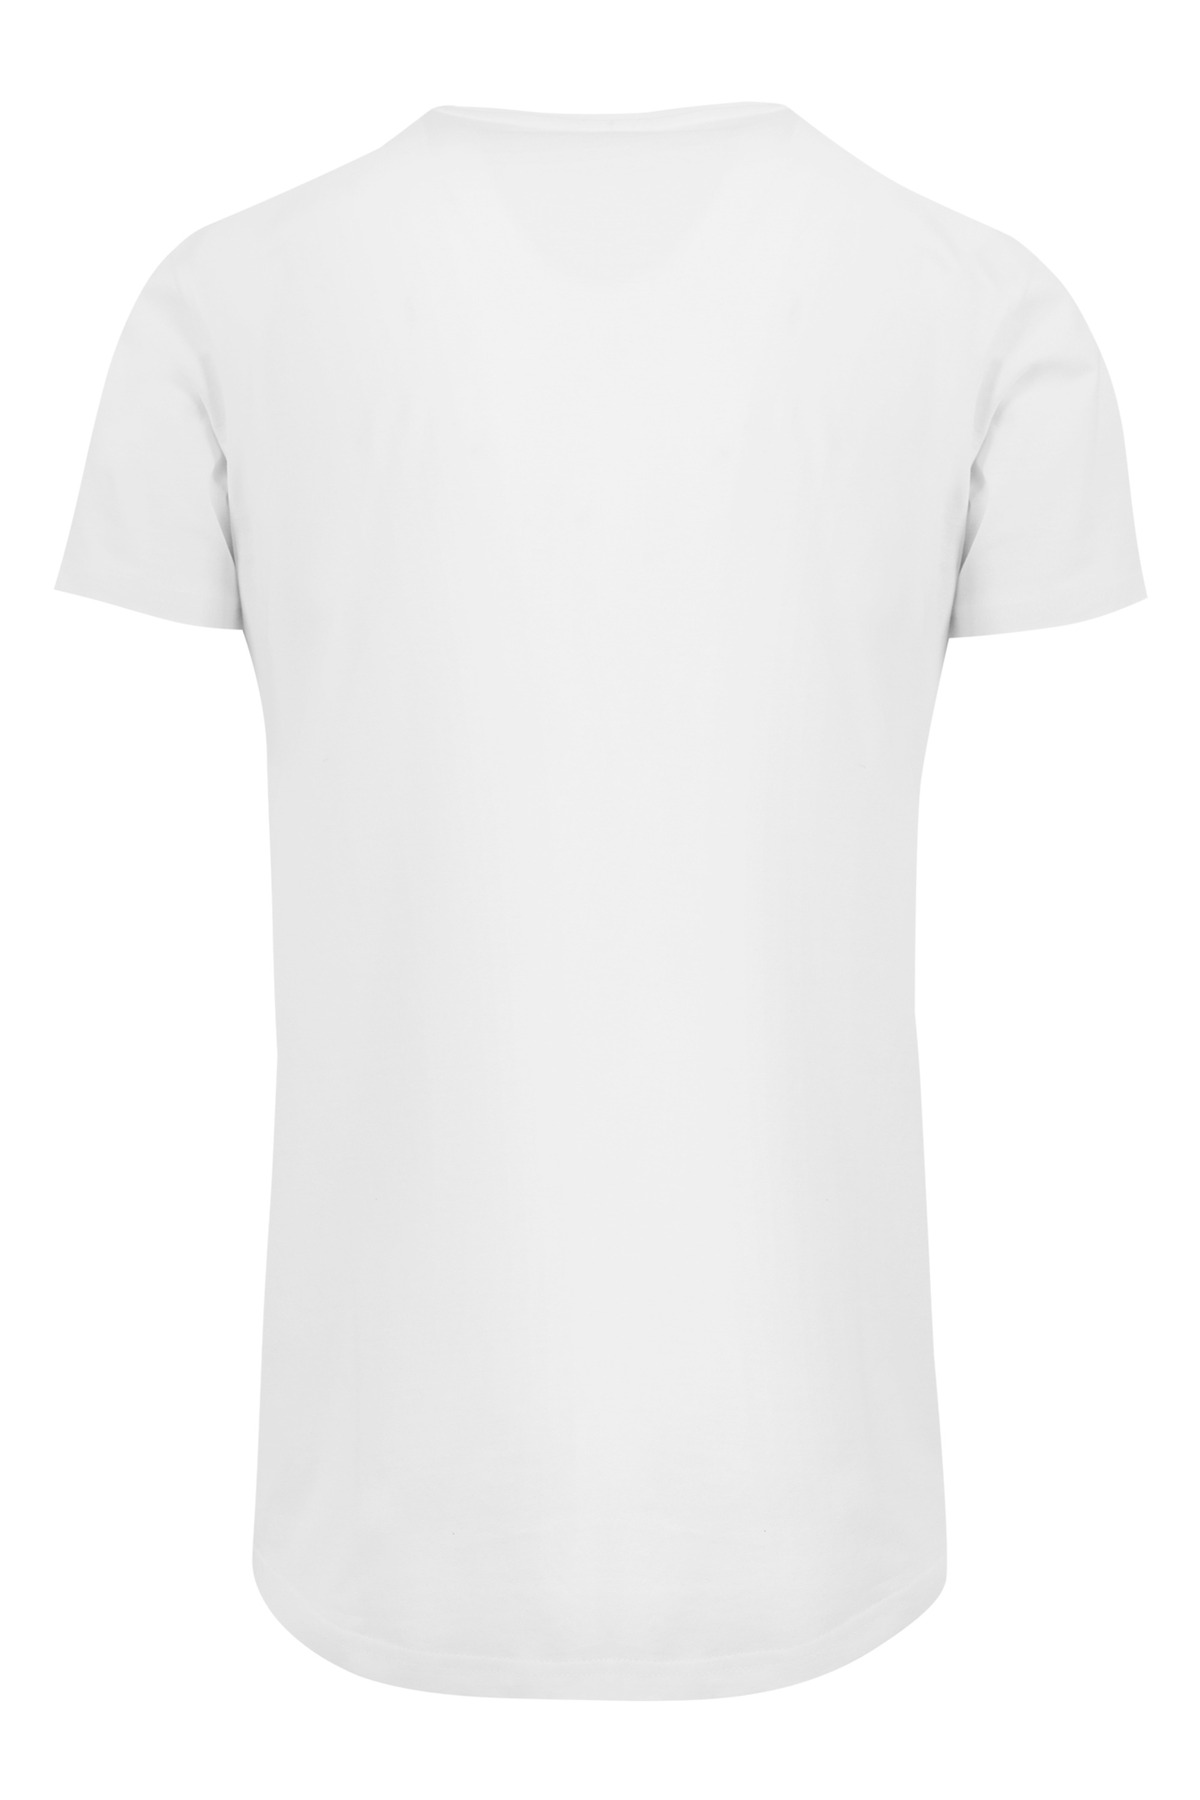 F4NT4STIC T-Shirt - - Trendyol Regular Weiß - Fit